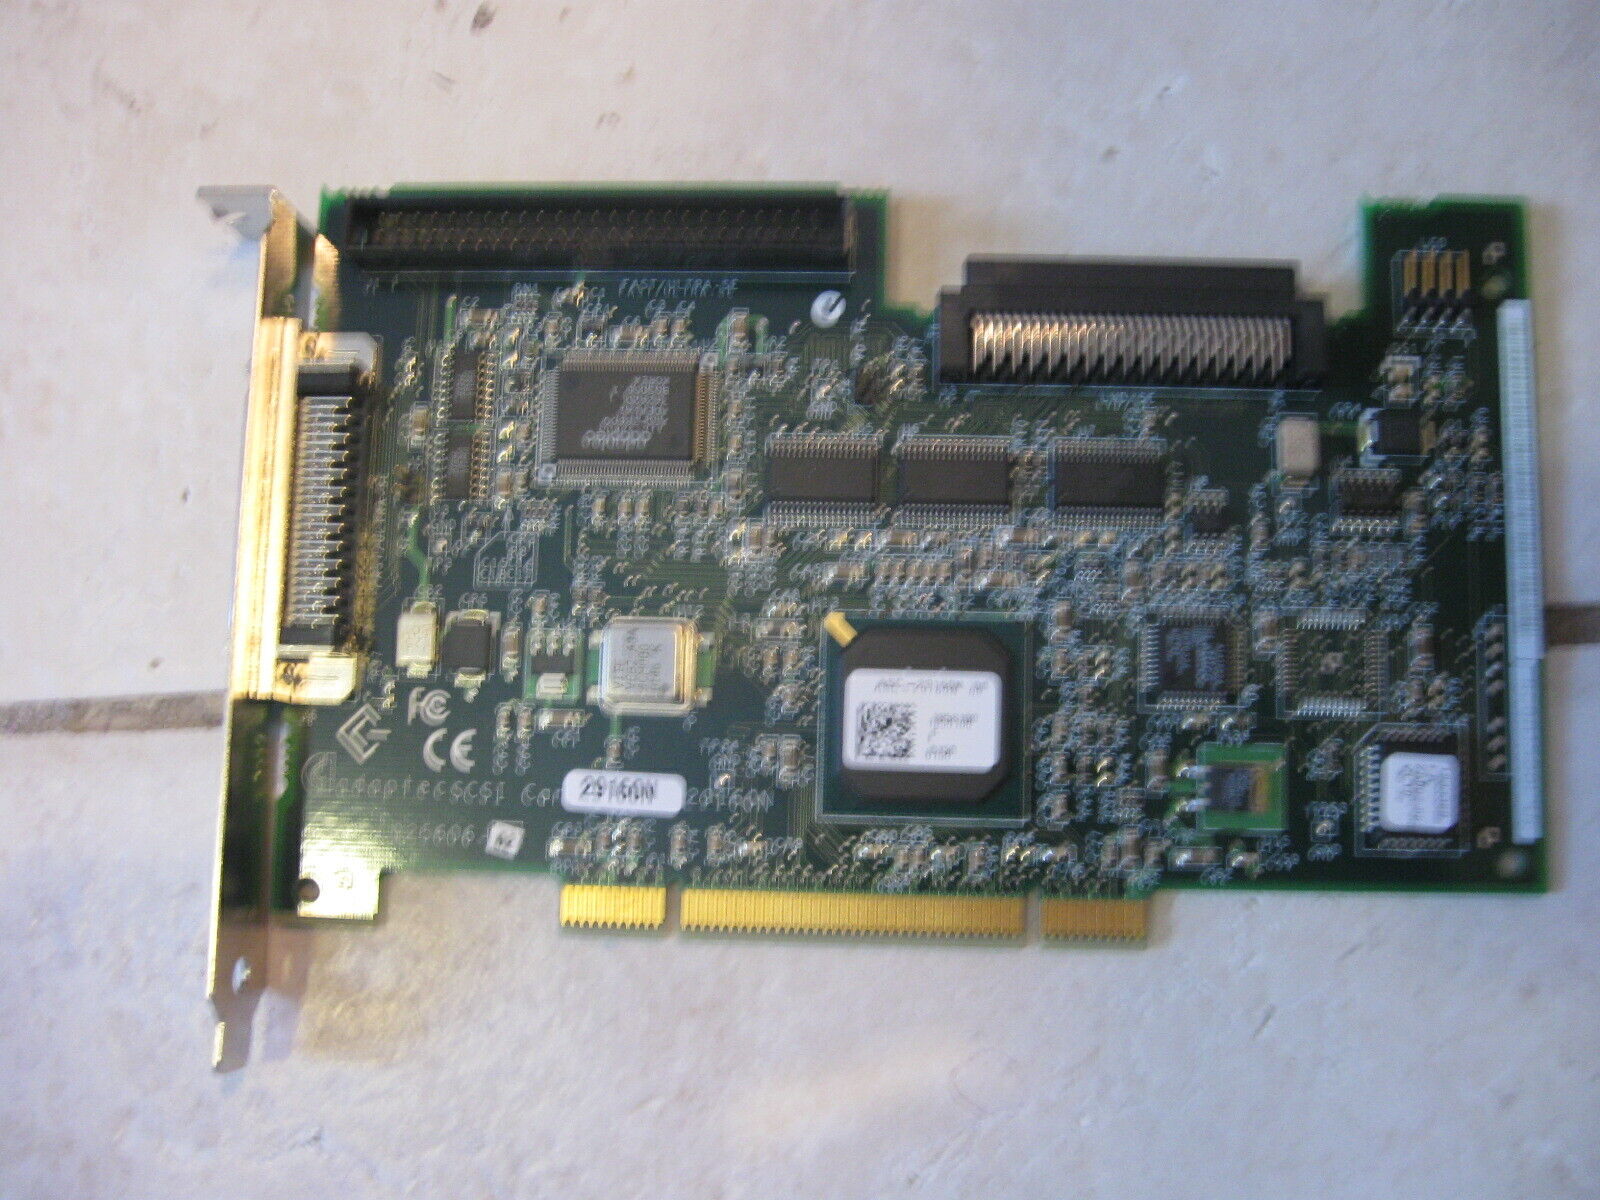 RARE Adaptec  29160N 1925606-02 SCSI Controller Card / ASC-29160N